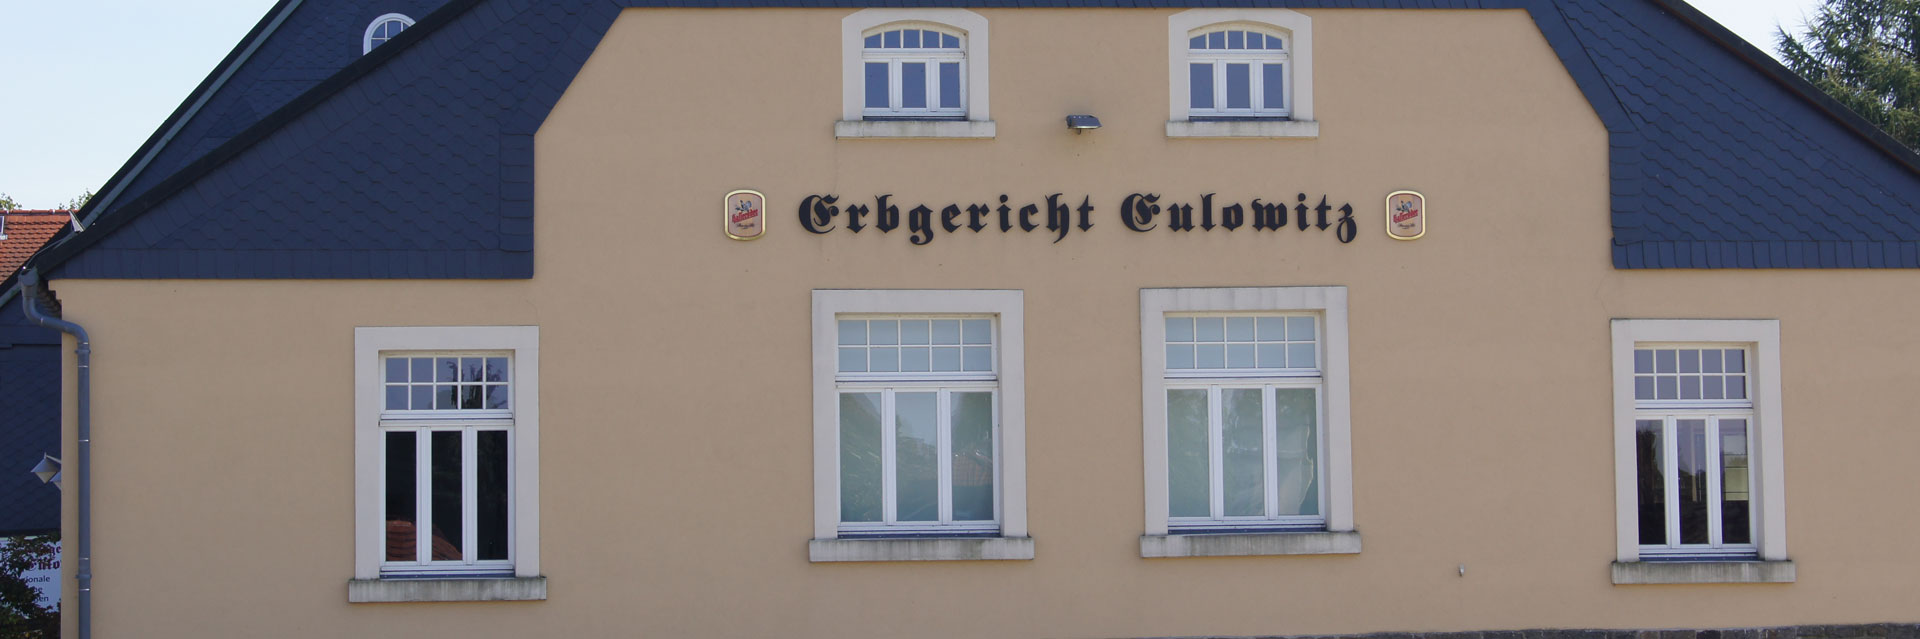 Gemeinde Großpostwitz - Erbgericht Eulowitz